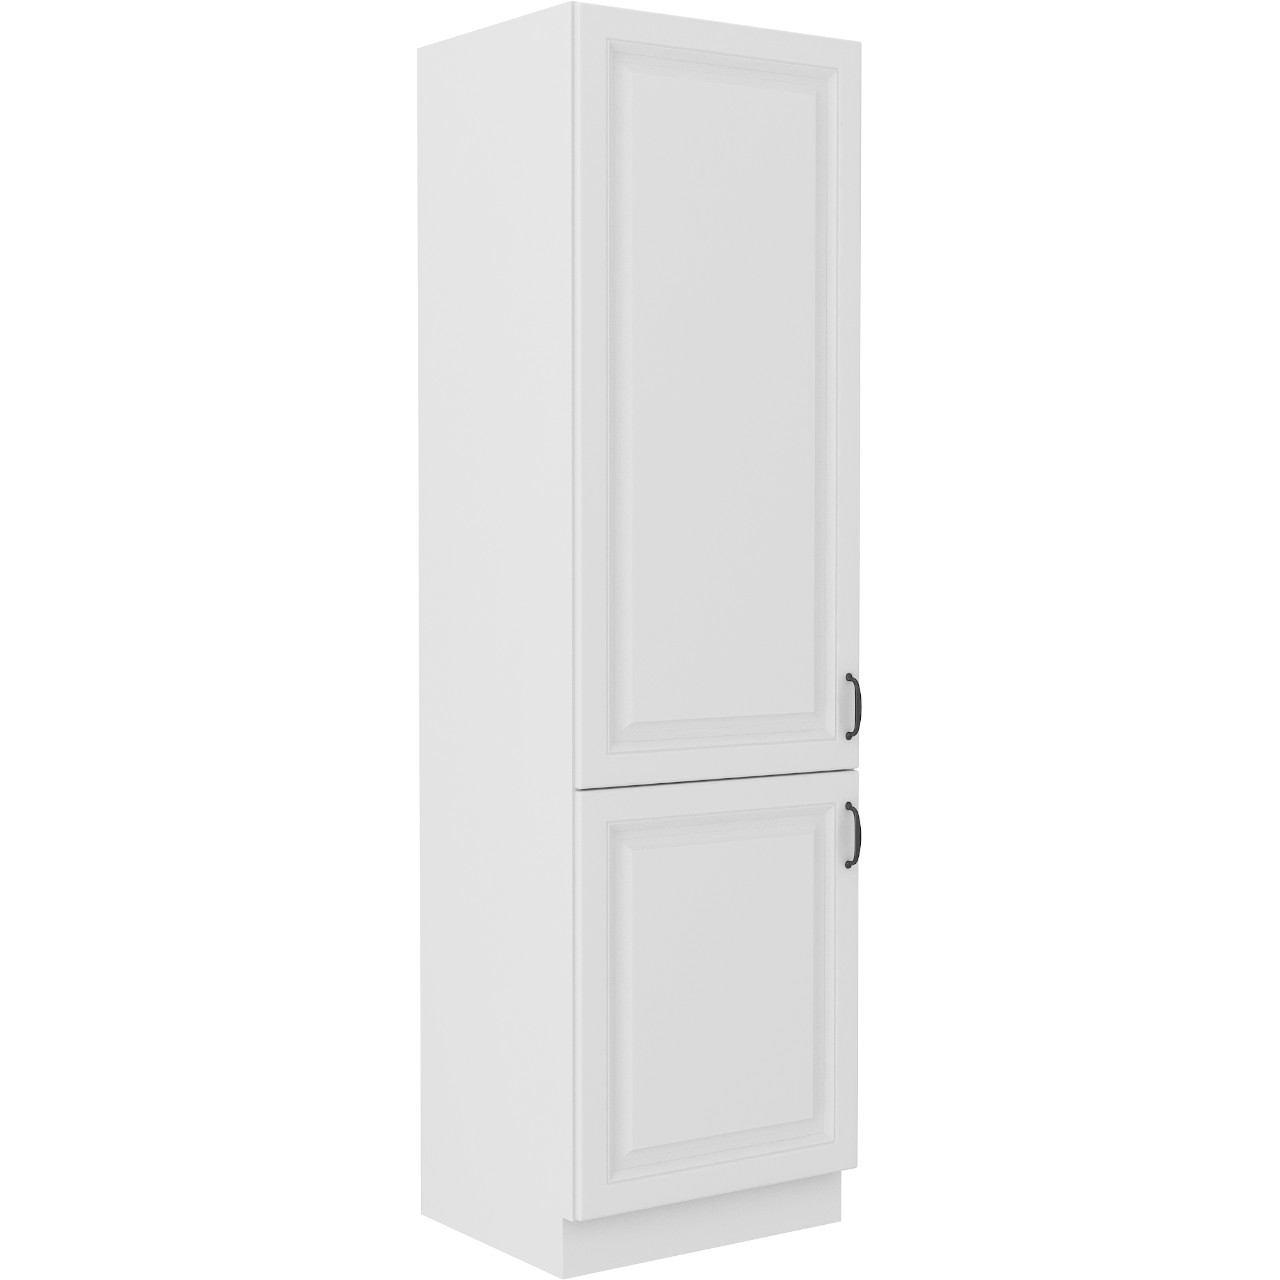 Base Cabinet for built-in fridge 60 STILO ST34 white